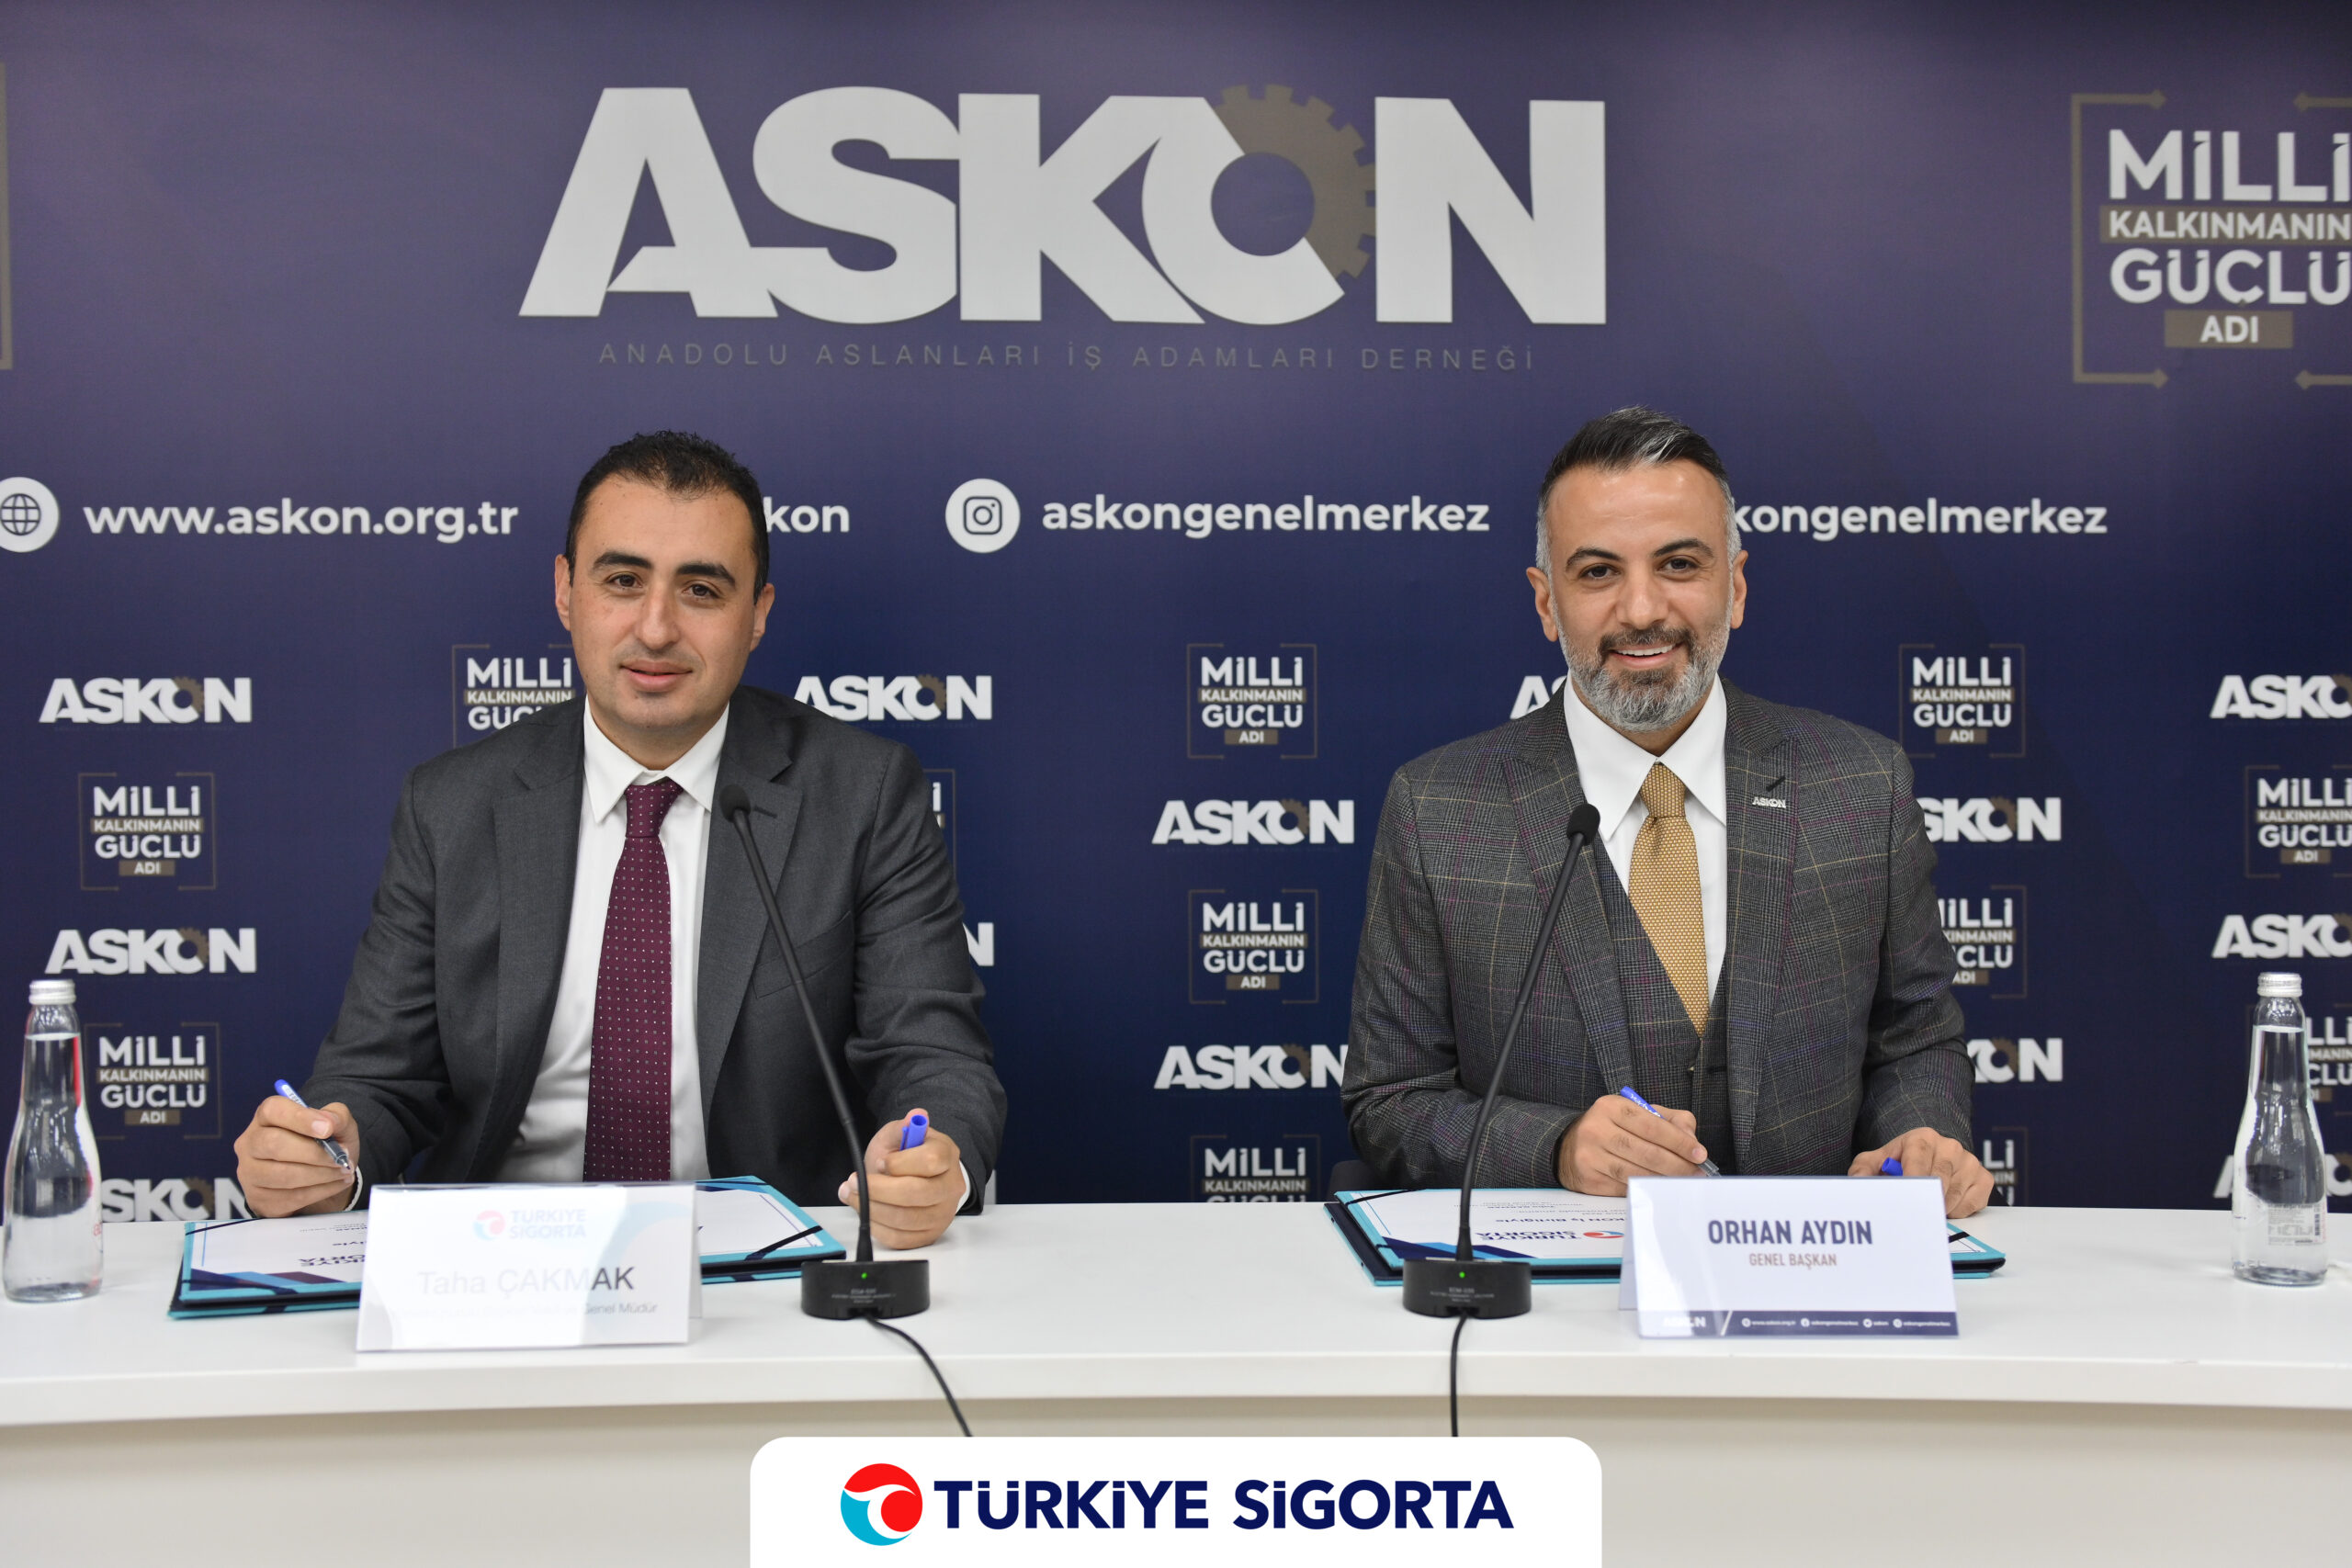 Türkiye Sigorta ve ASKON’dan iş birliği